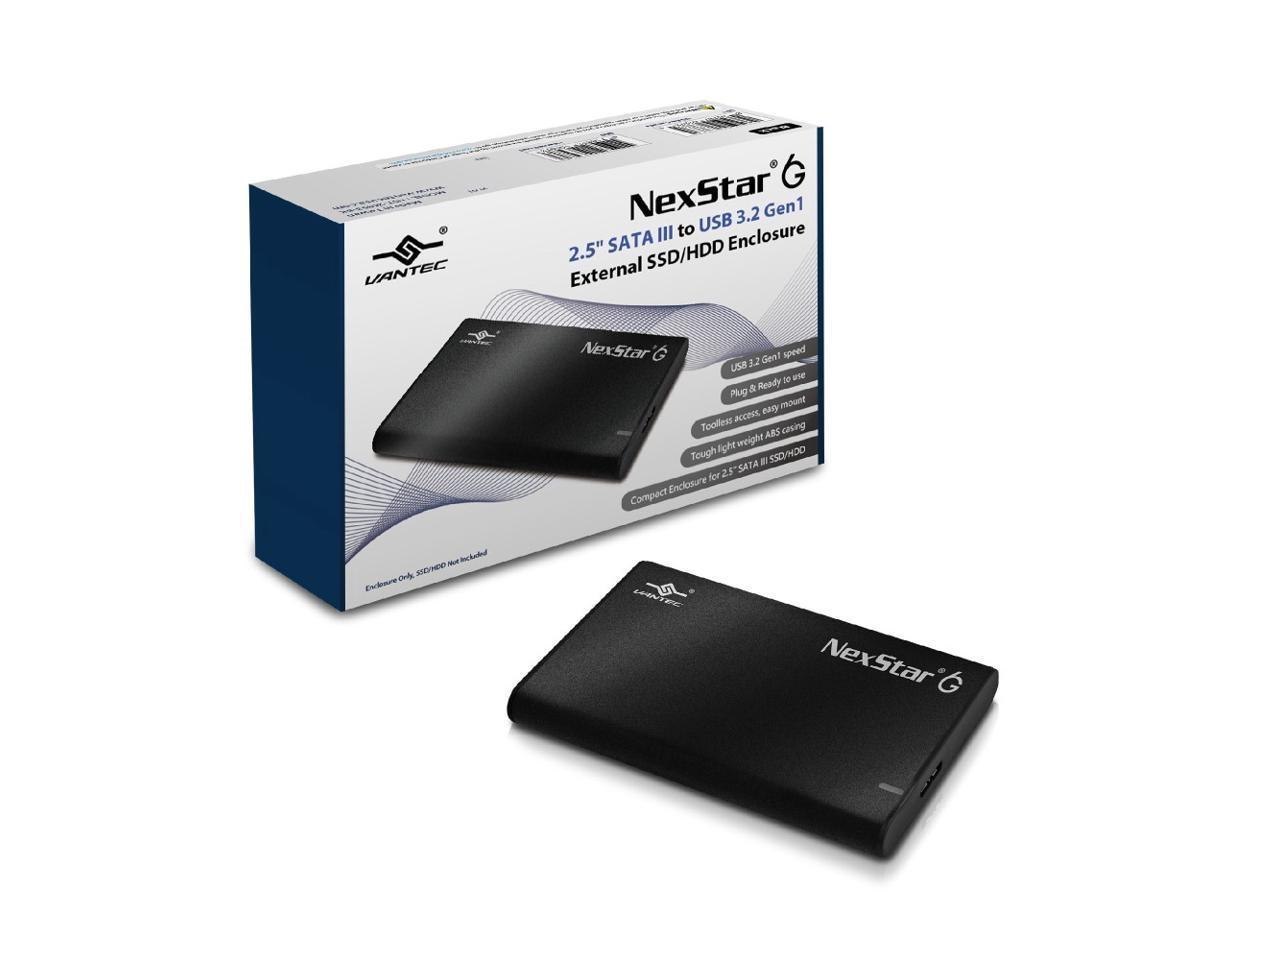 Vantec NexStar 6G 2.5” Sata Iii To Usb 3.2 Gen1 External SSD/HDD Enclosure NST-268S3-BK